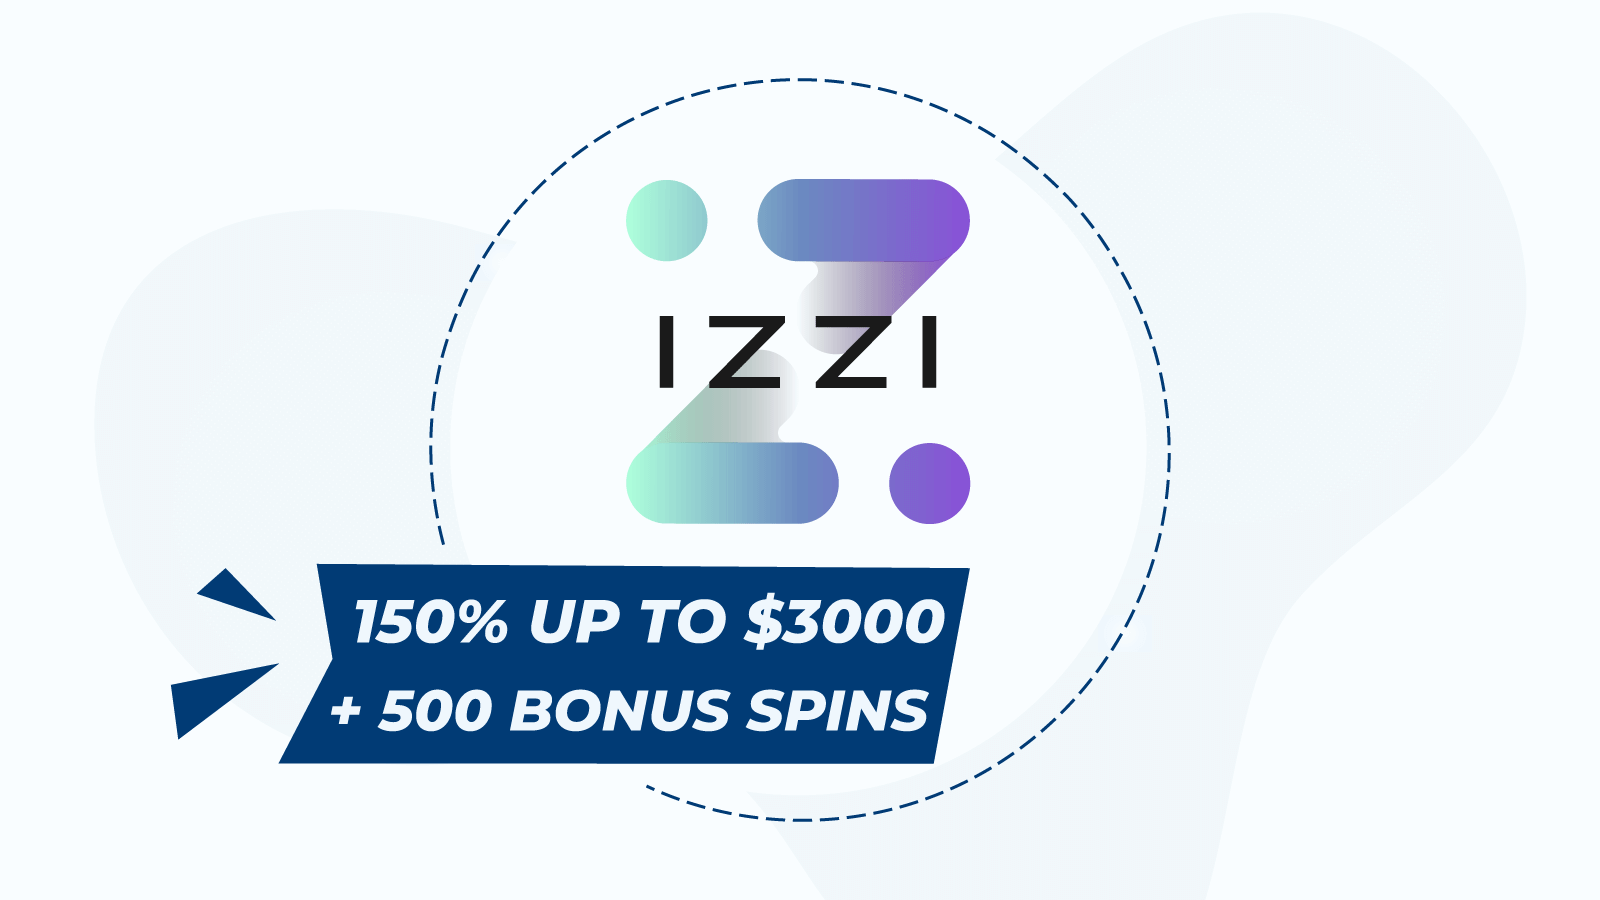 Start with 150% up to $3000 + 500 bonus spins at Izzi Casino